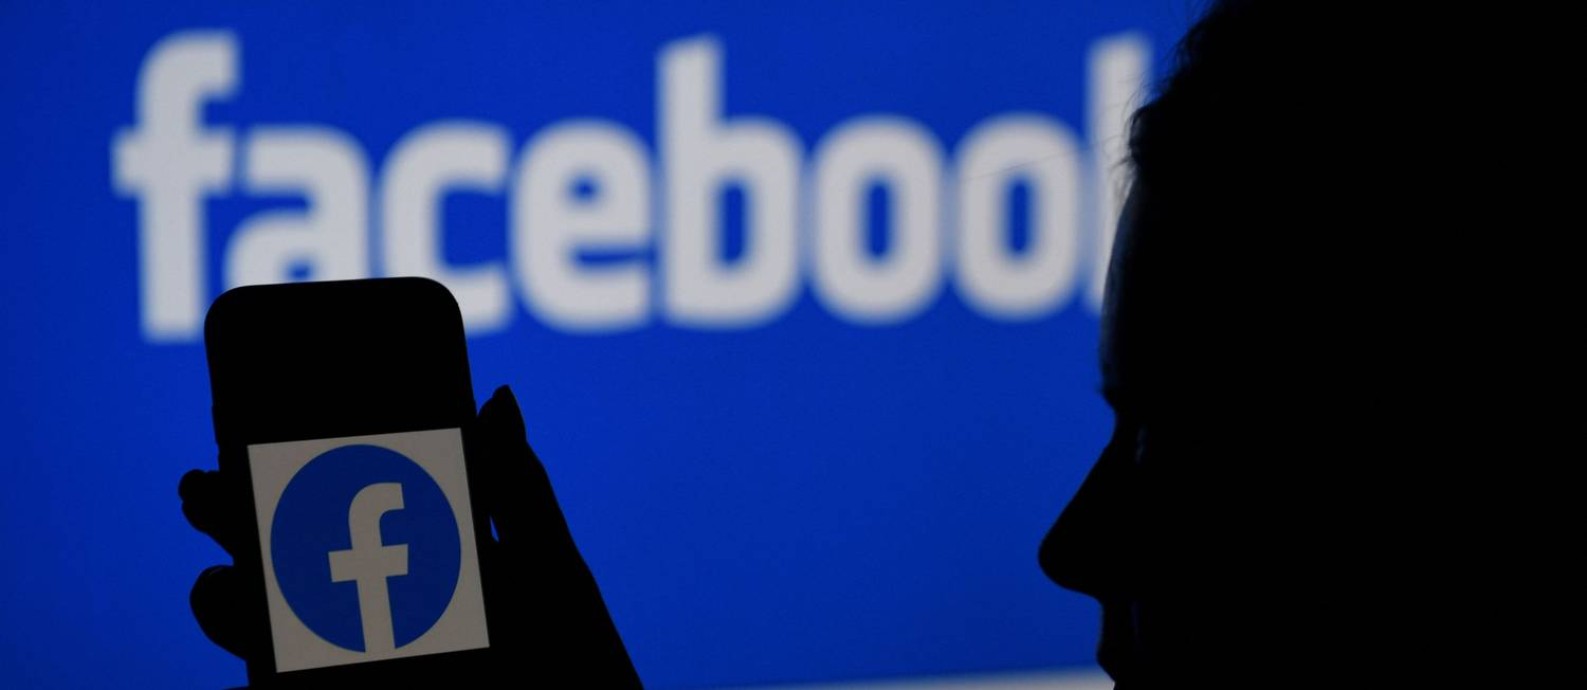 Logo do Facebook é vista na tela de um smartphone Foto: OLIVIER DOULIERY / AFP